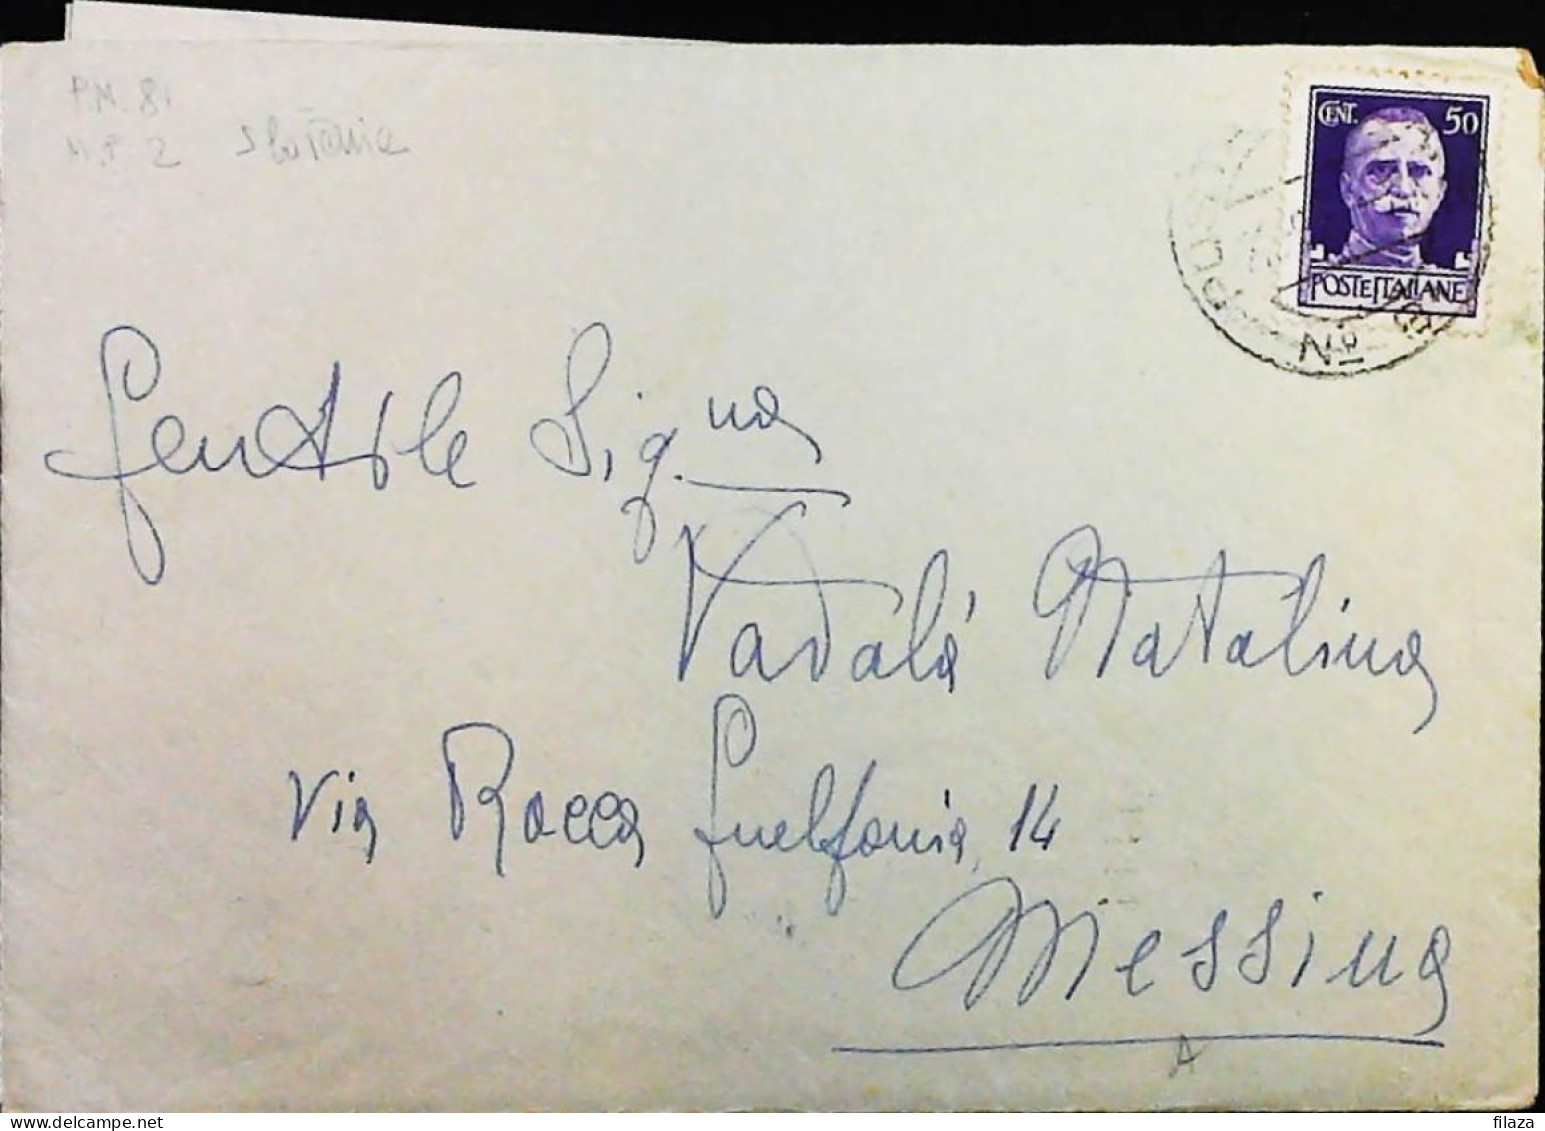 POSTA MILITARE ITALIA IN SLOVENIA  - WWII WW2 - S7435 - Military Mail (PM)